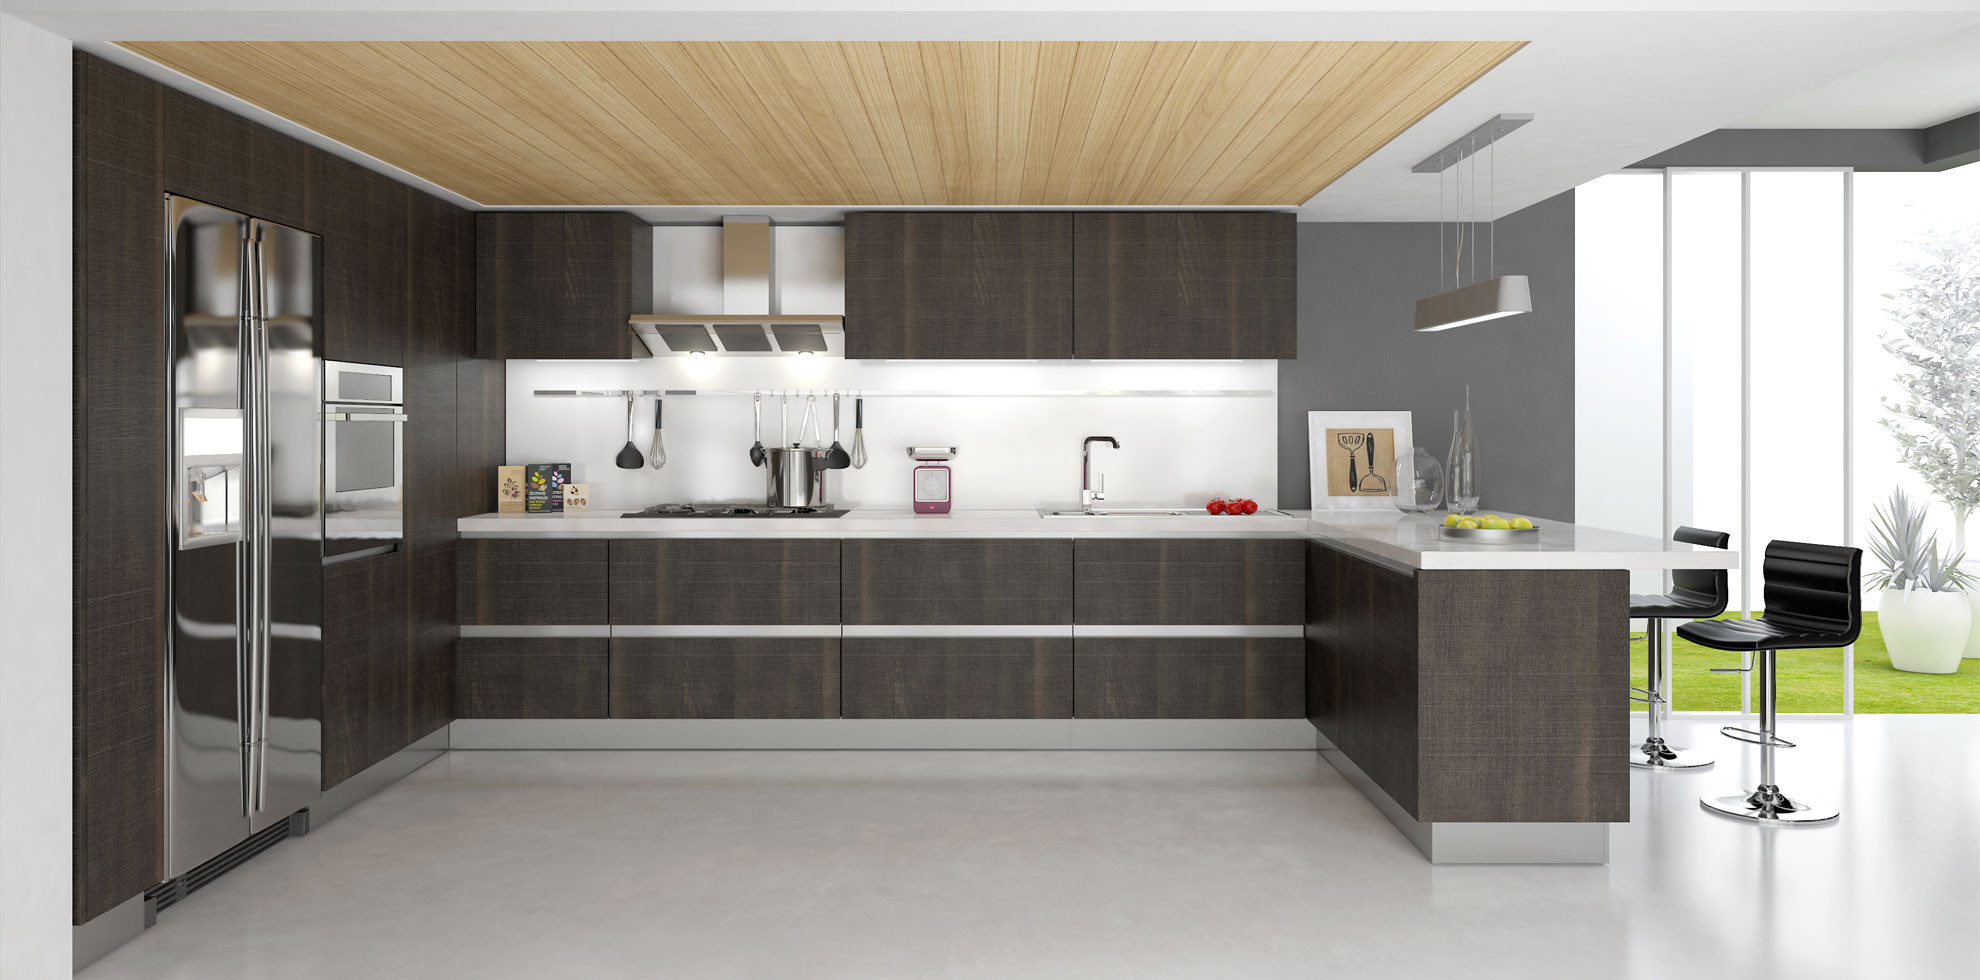 Modern Kitchen Cabinet Design Photos
 20 Prime Examples of Modern Kitchen Cabinets